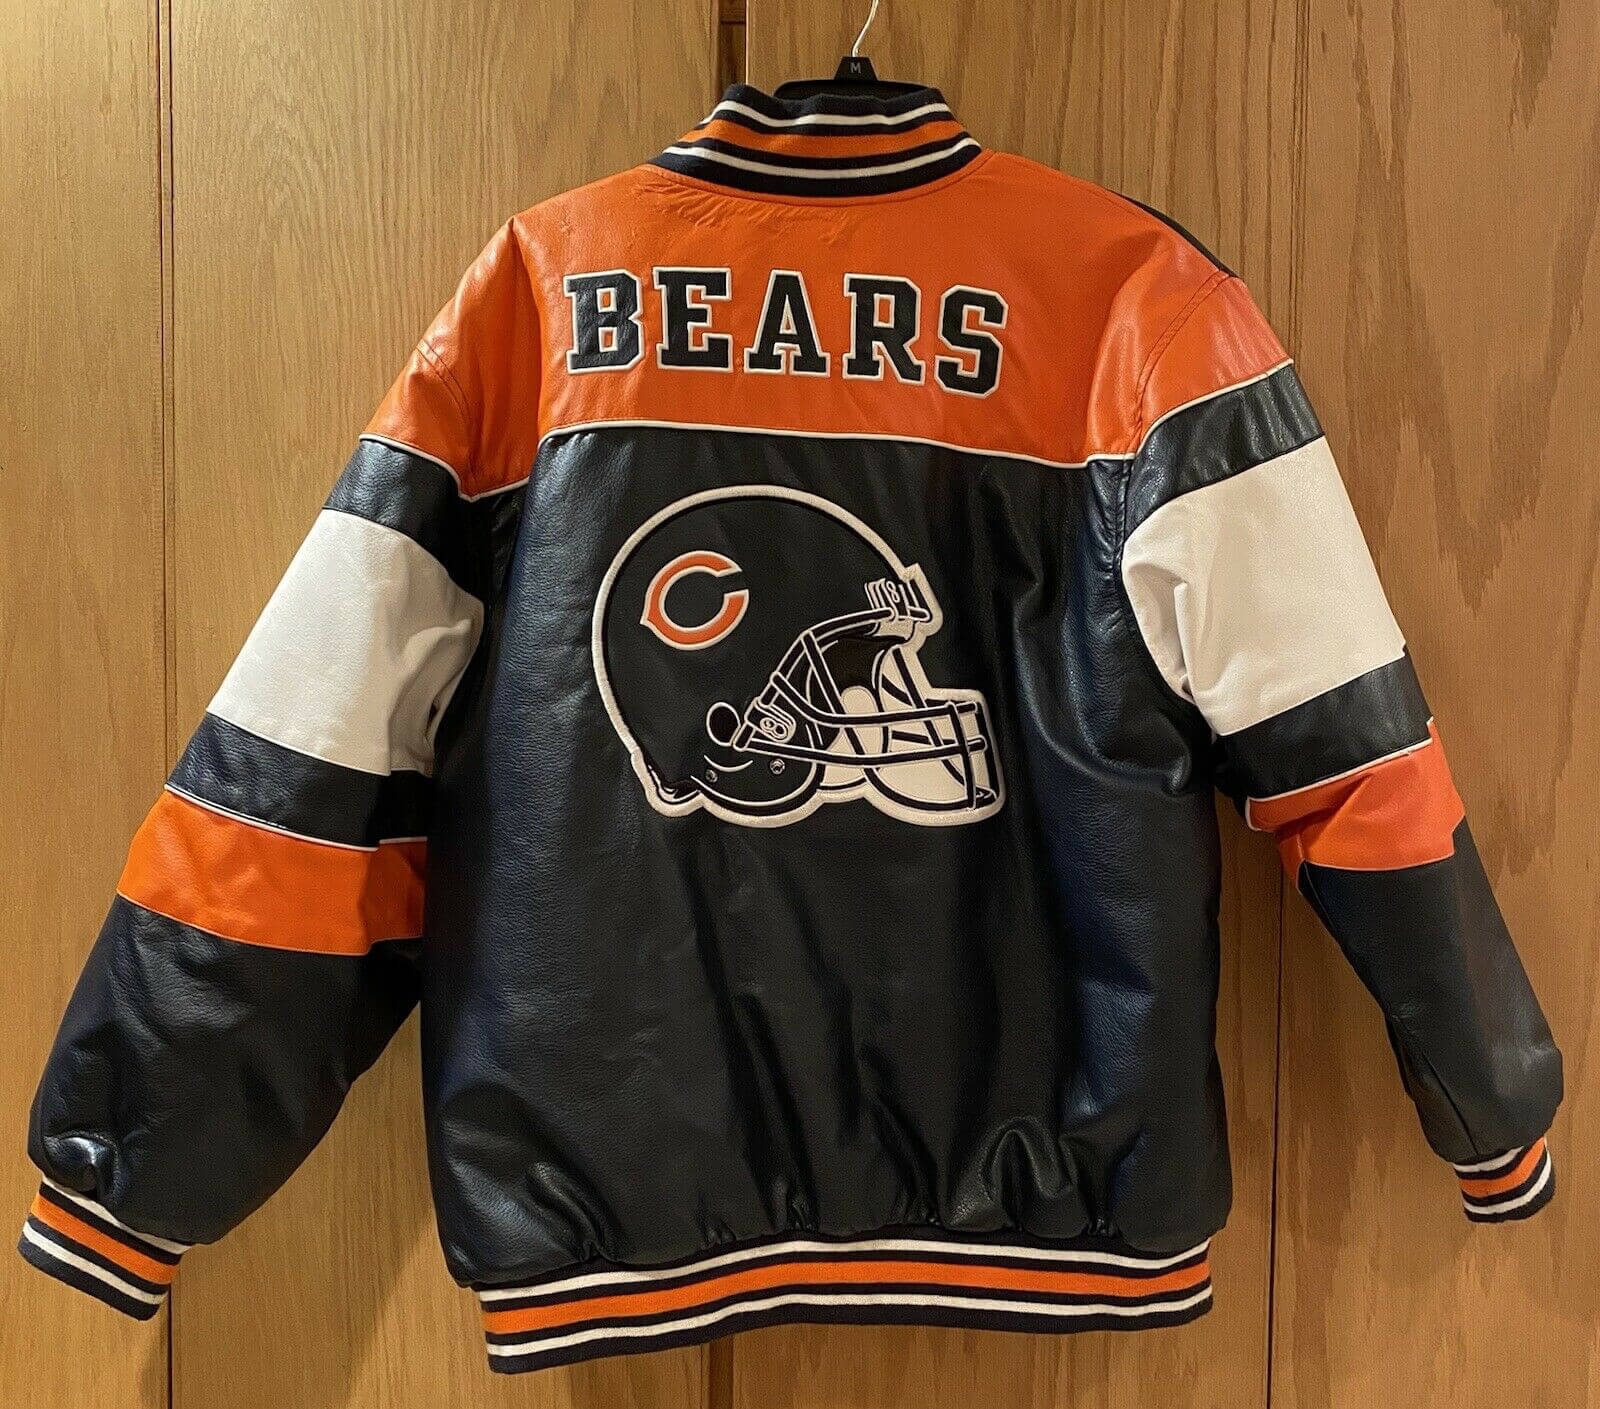 Vintage NFL Team Chicago Bears Leather Jacket - Maker of Jacket